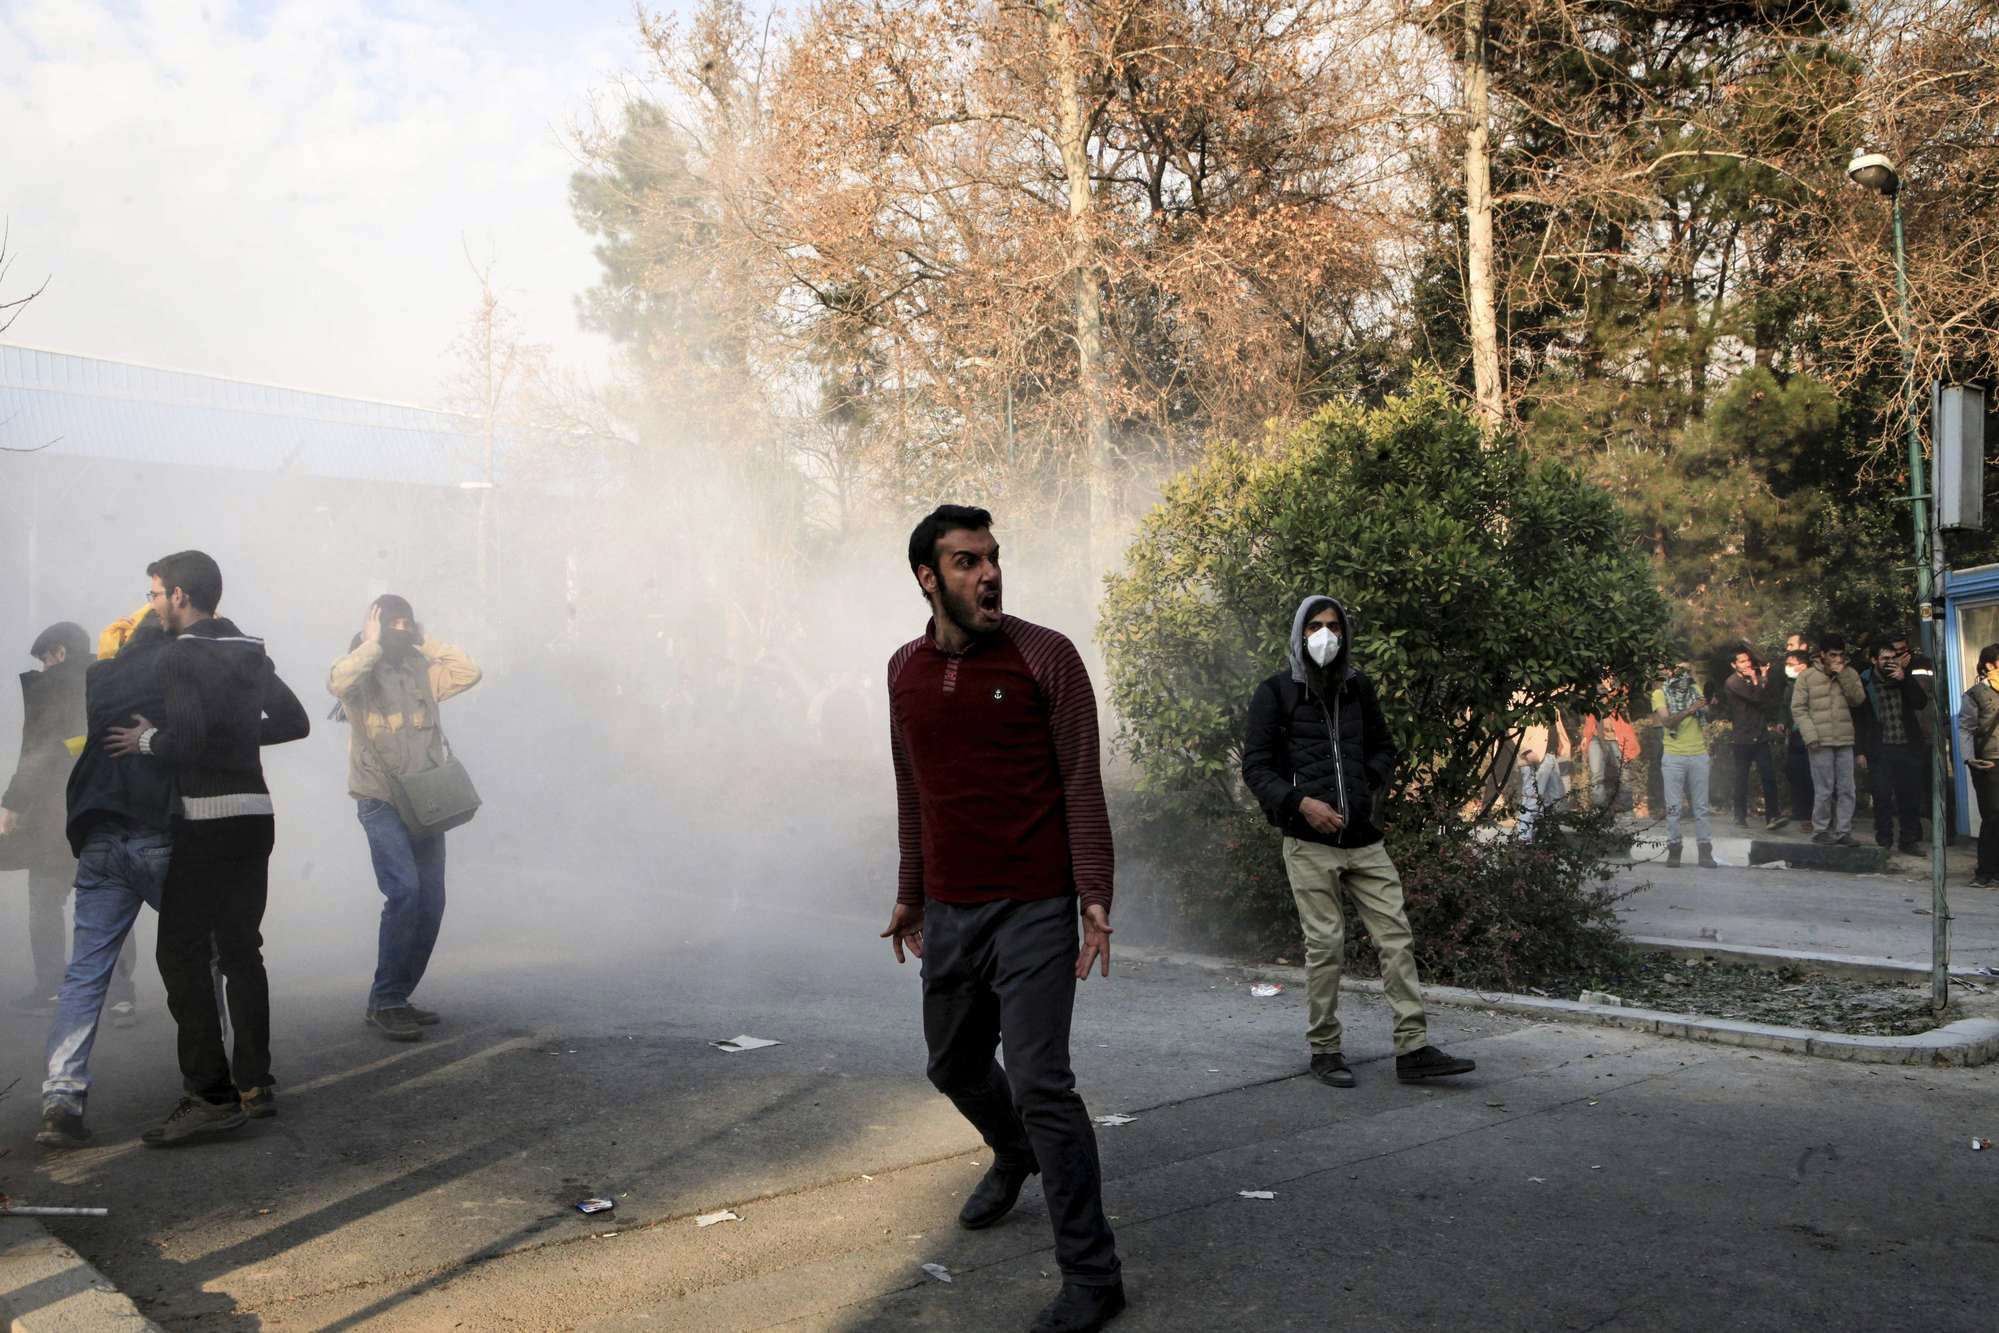 الاحتجاجات فعل نادر في إيران لكنها باتت تطرق بقوة أبواب الجمهورية الإسلامية